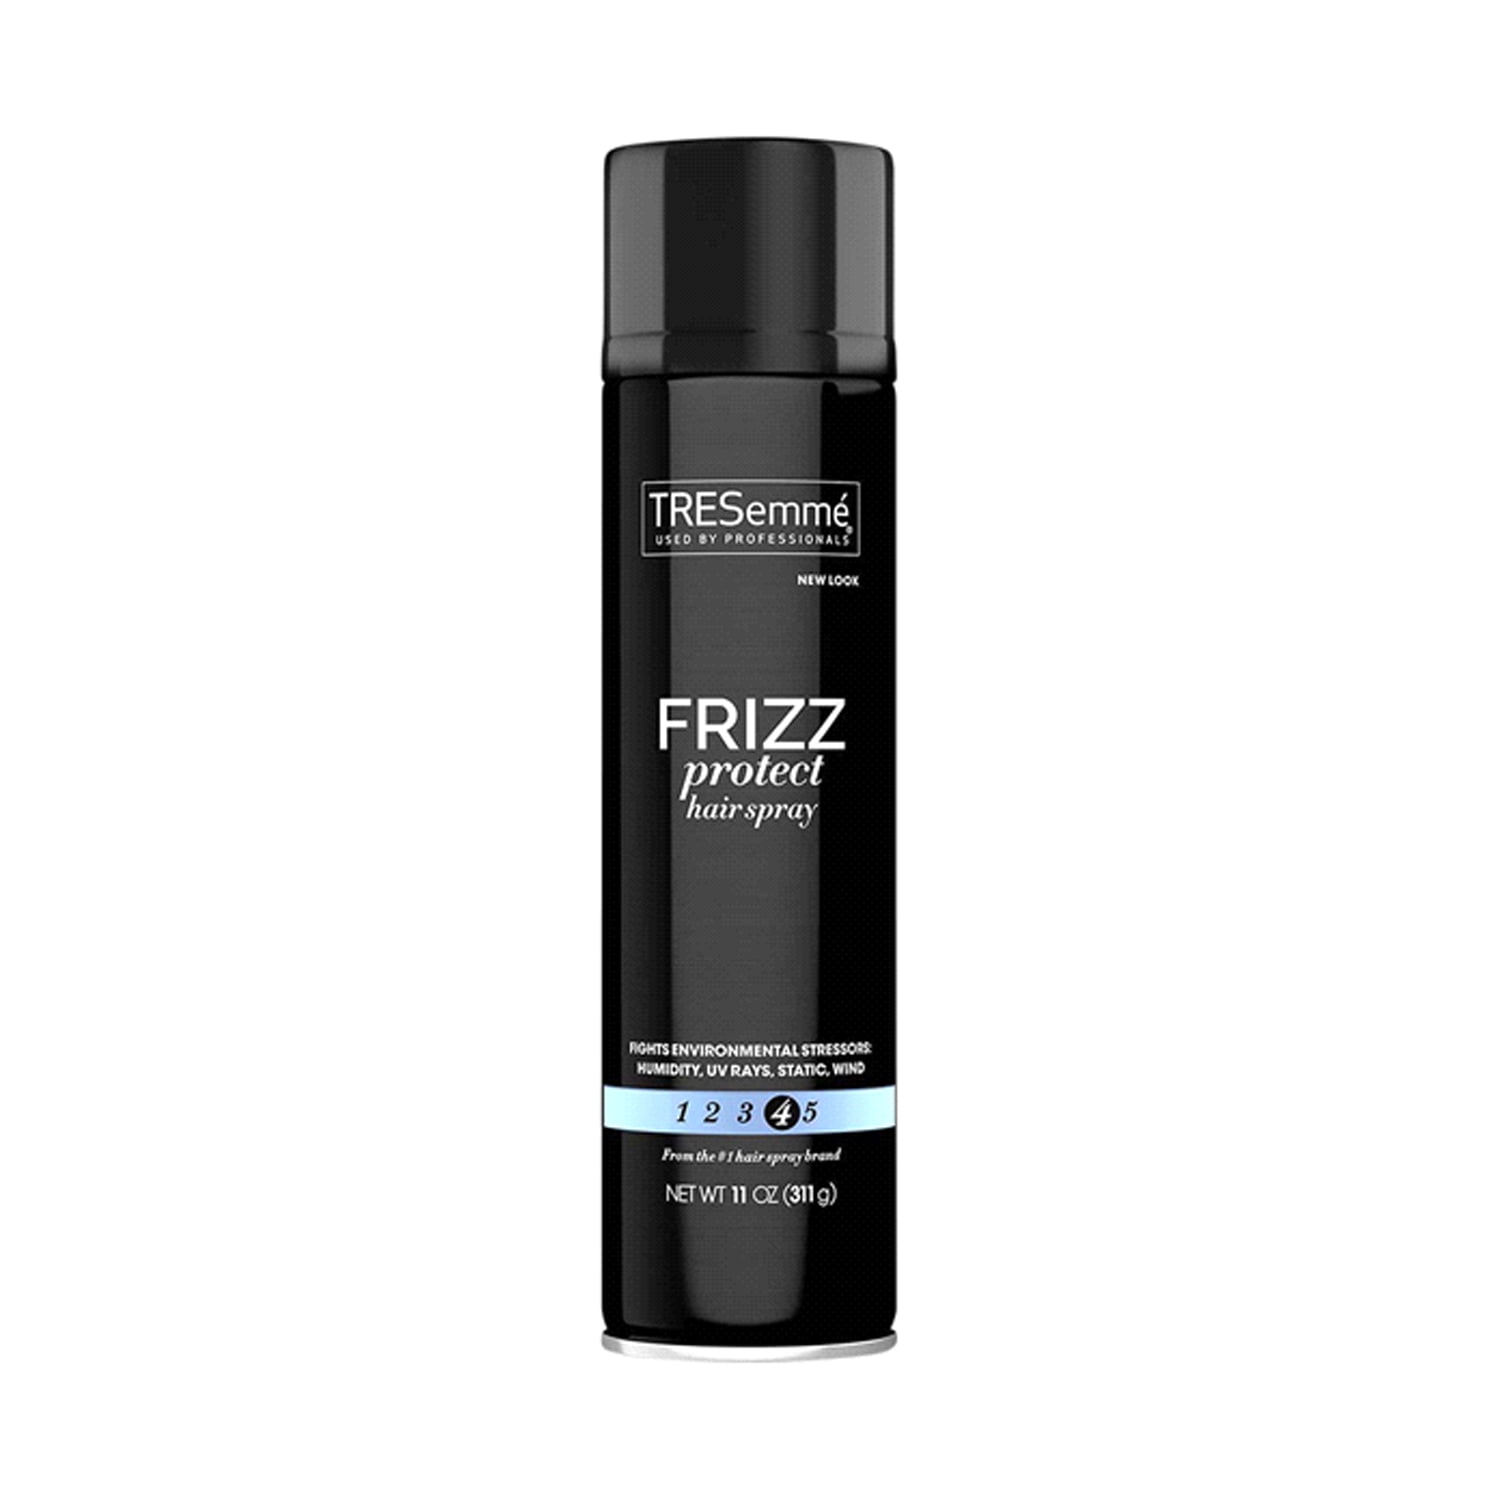 Hair Food Coconut & Argan Oil Heat Protectant Spray Blend - 6.4 fl oz